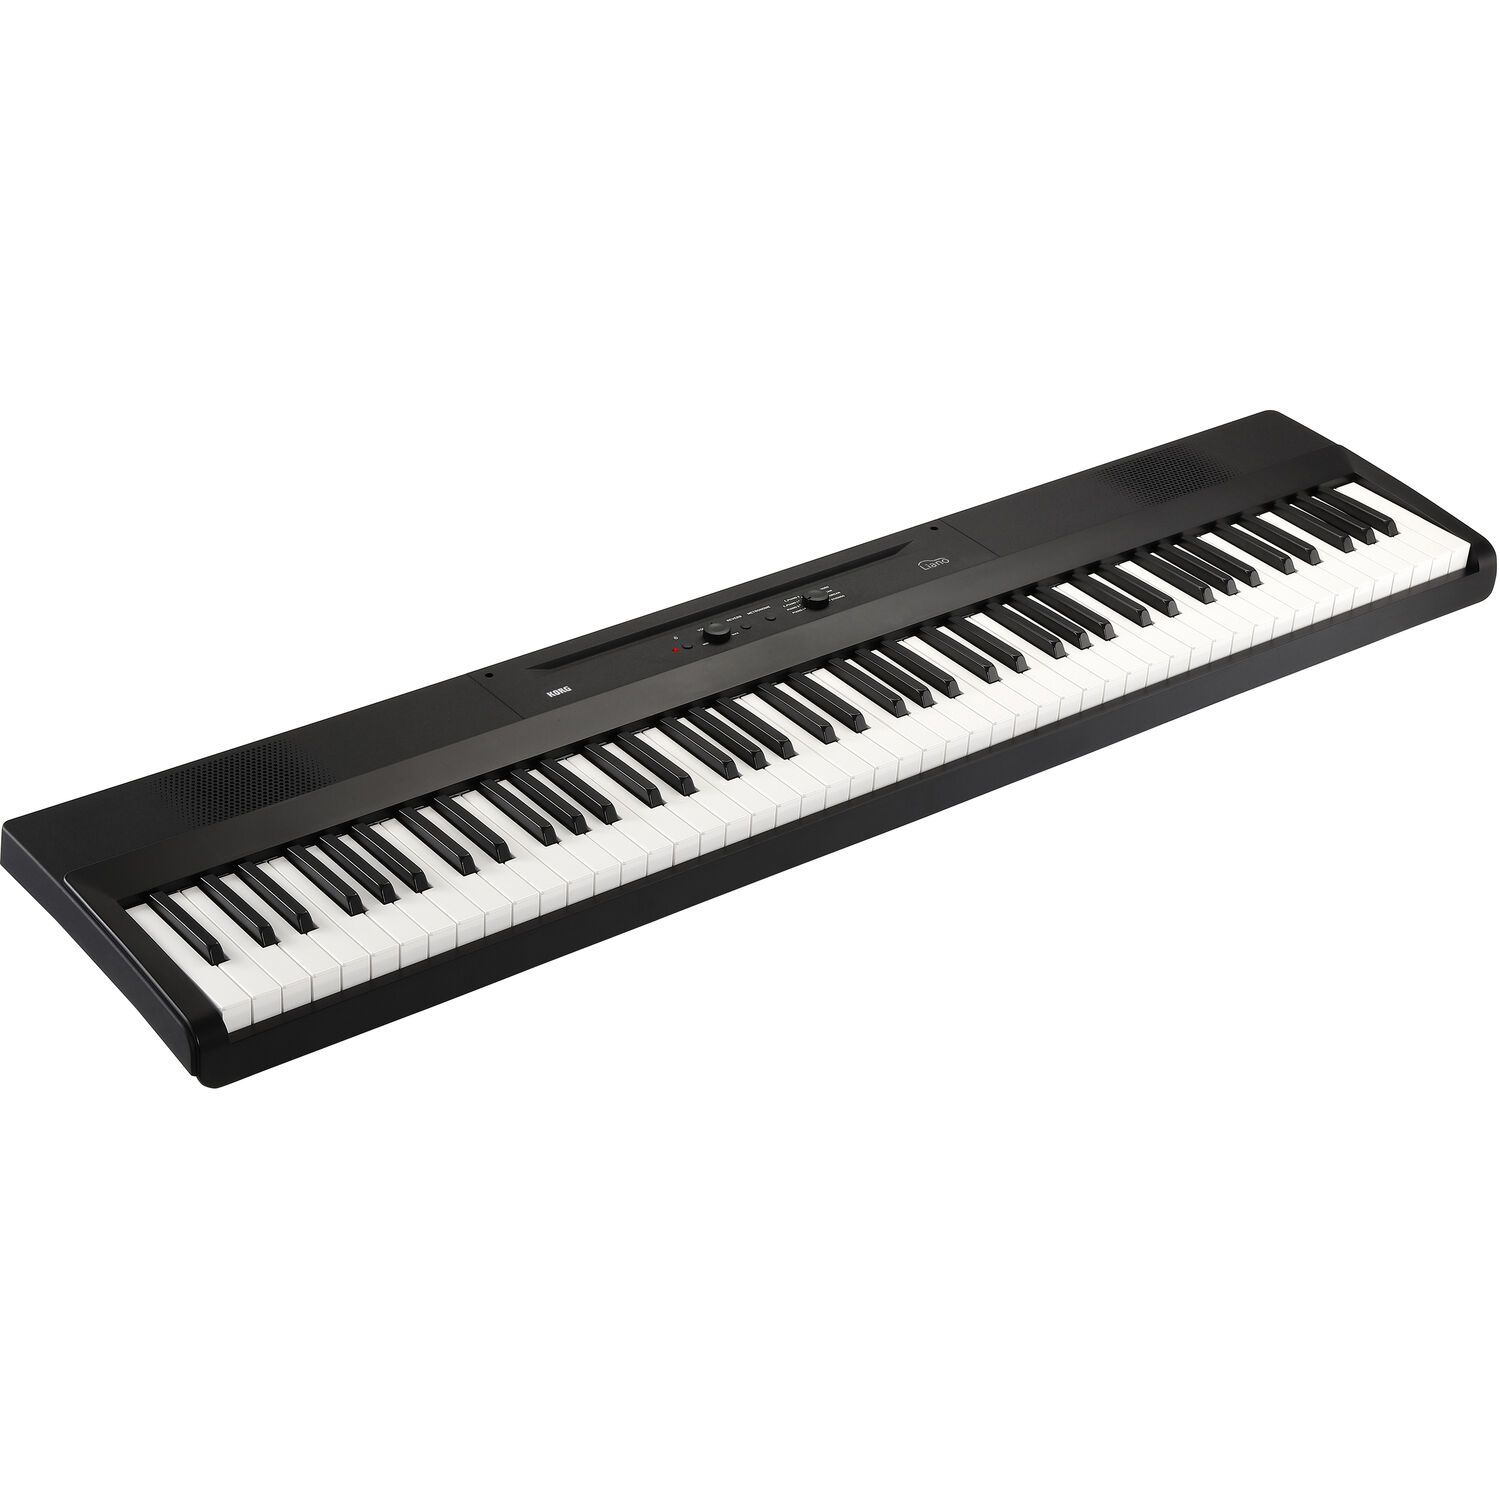 Piano Digital Portátil Korg L1 Liano de 88 Teclas con Cuerpo Delgado Negro